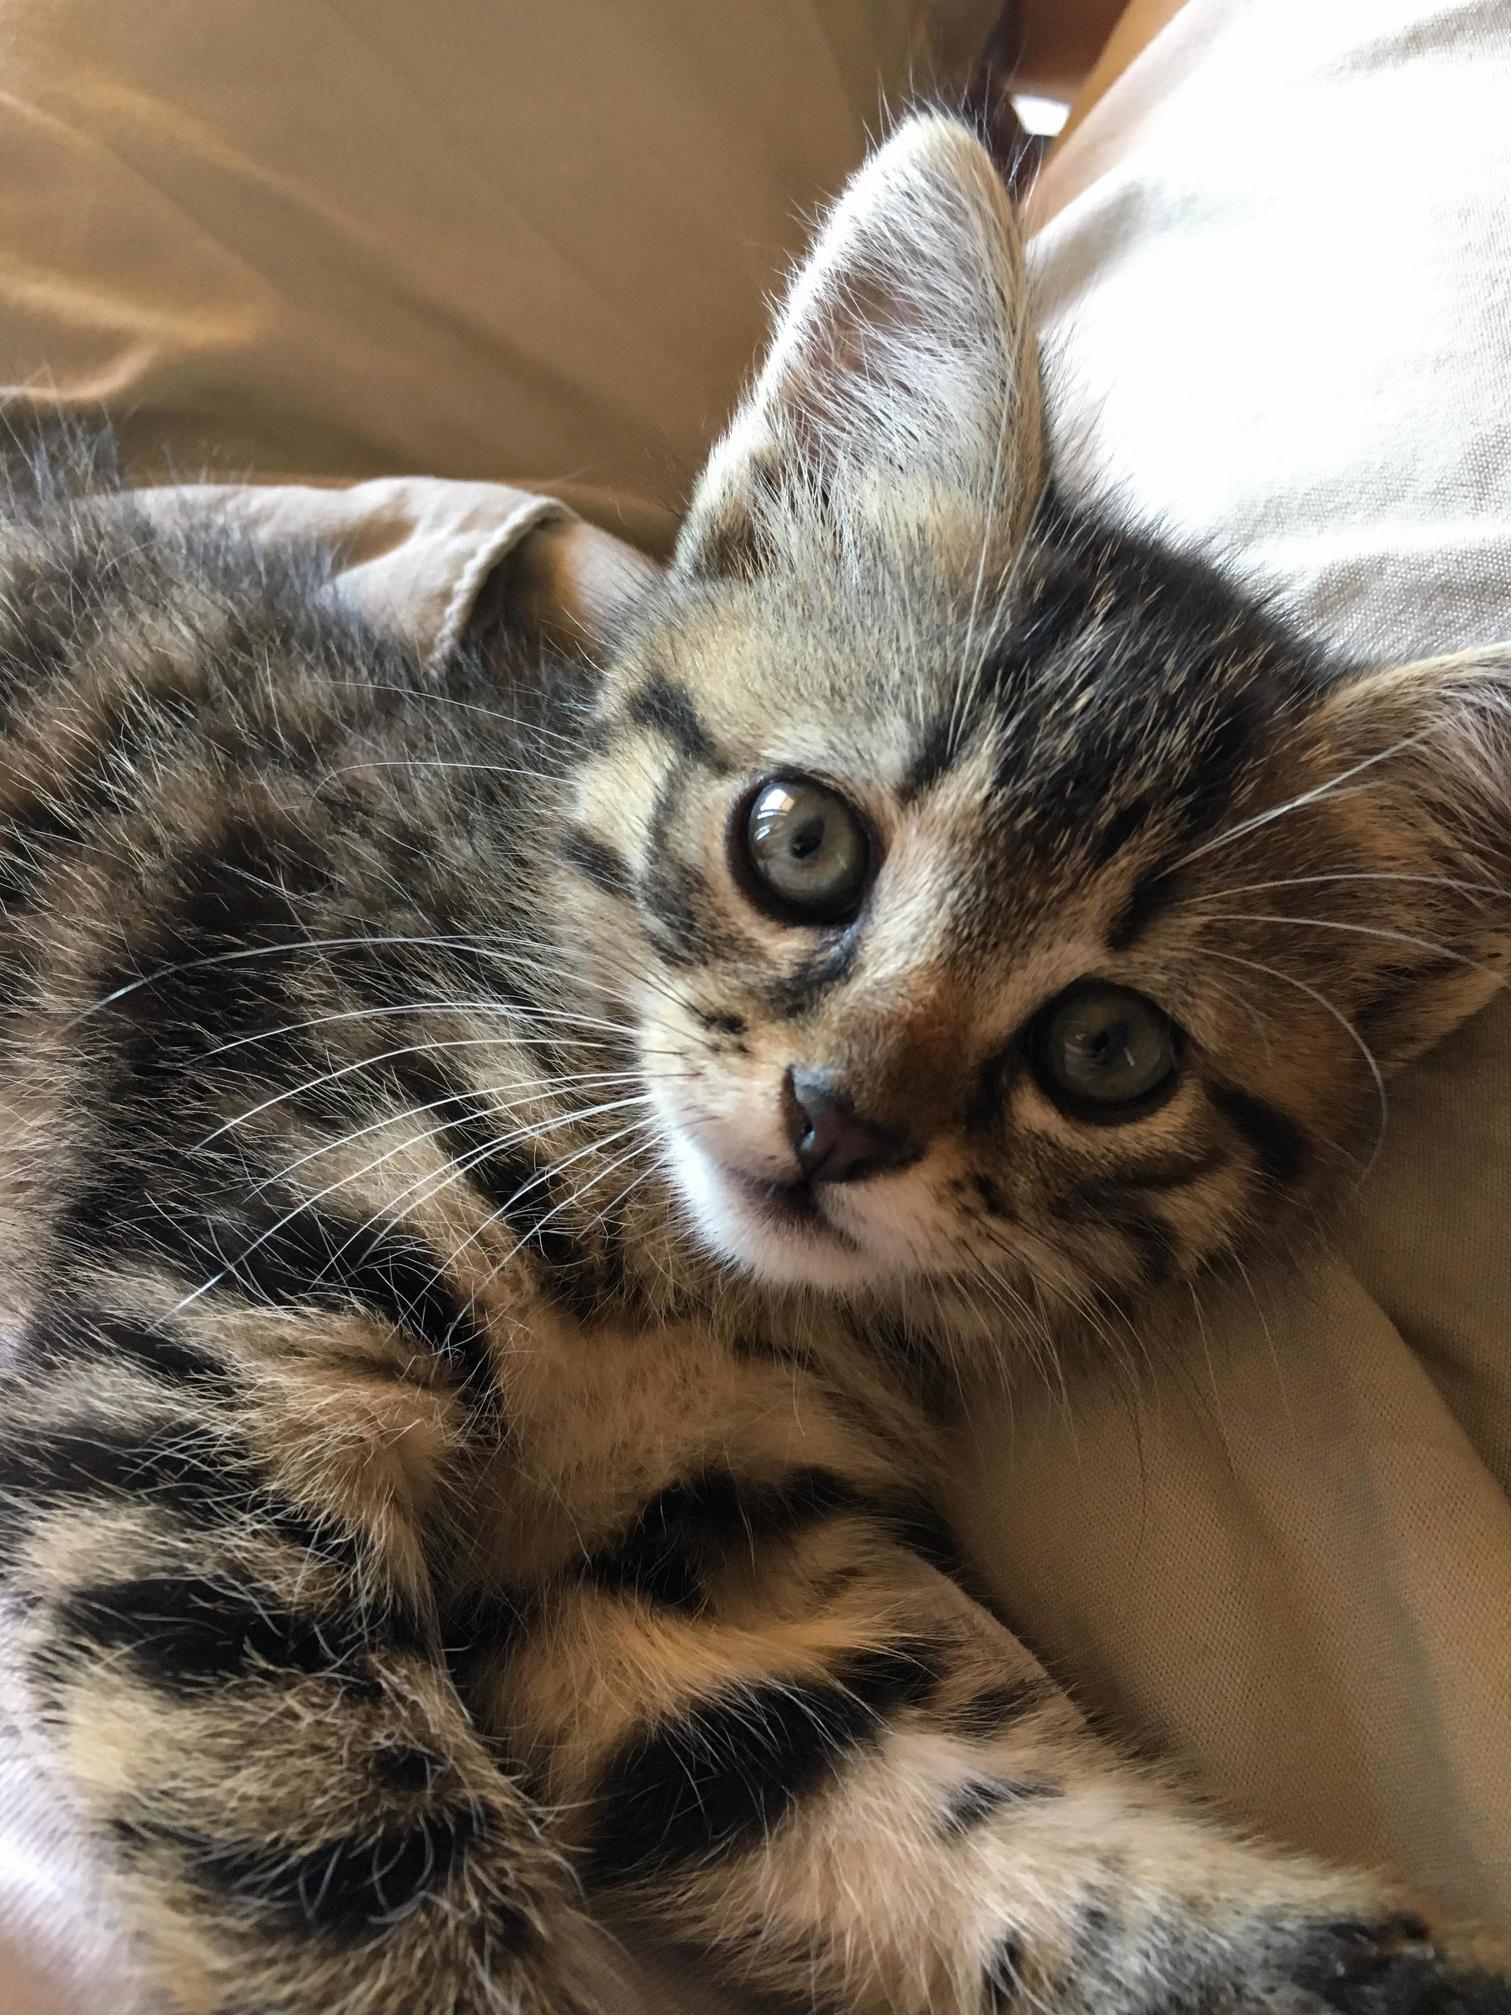 Reddit, meet my new kitten, daphe 